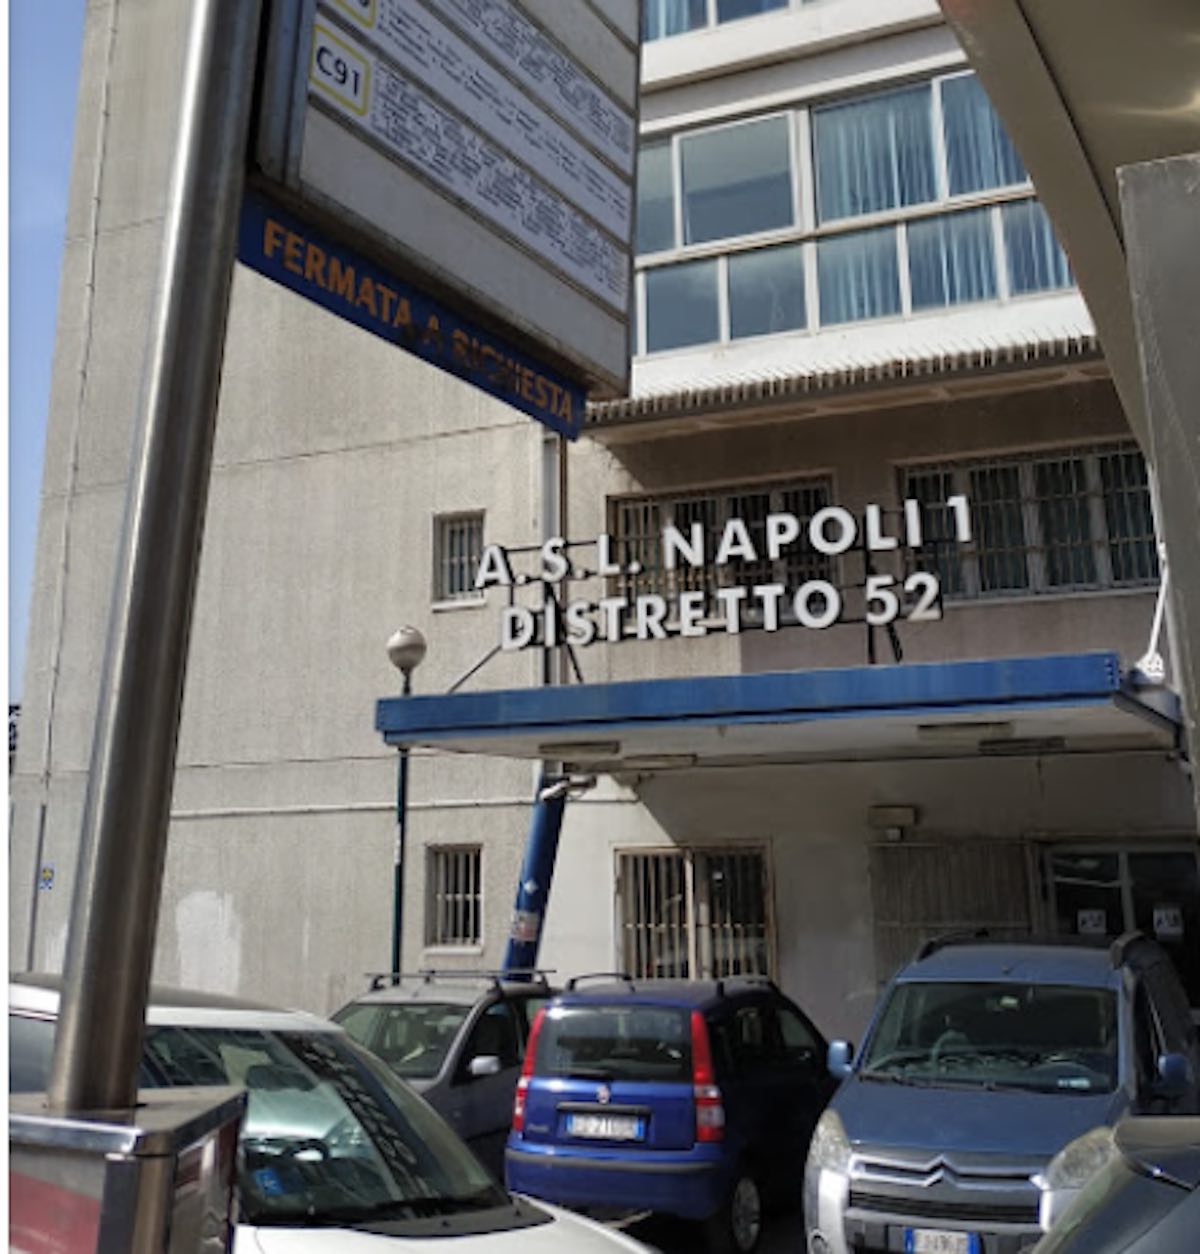 Napoli: arrestato 46enne per sequestro personale e richiesta cateteri diversi per la madre dall’Asl.